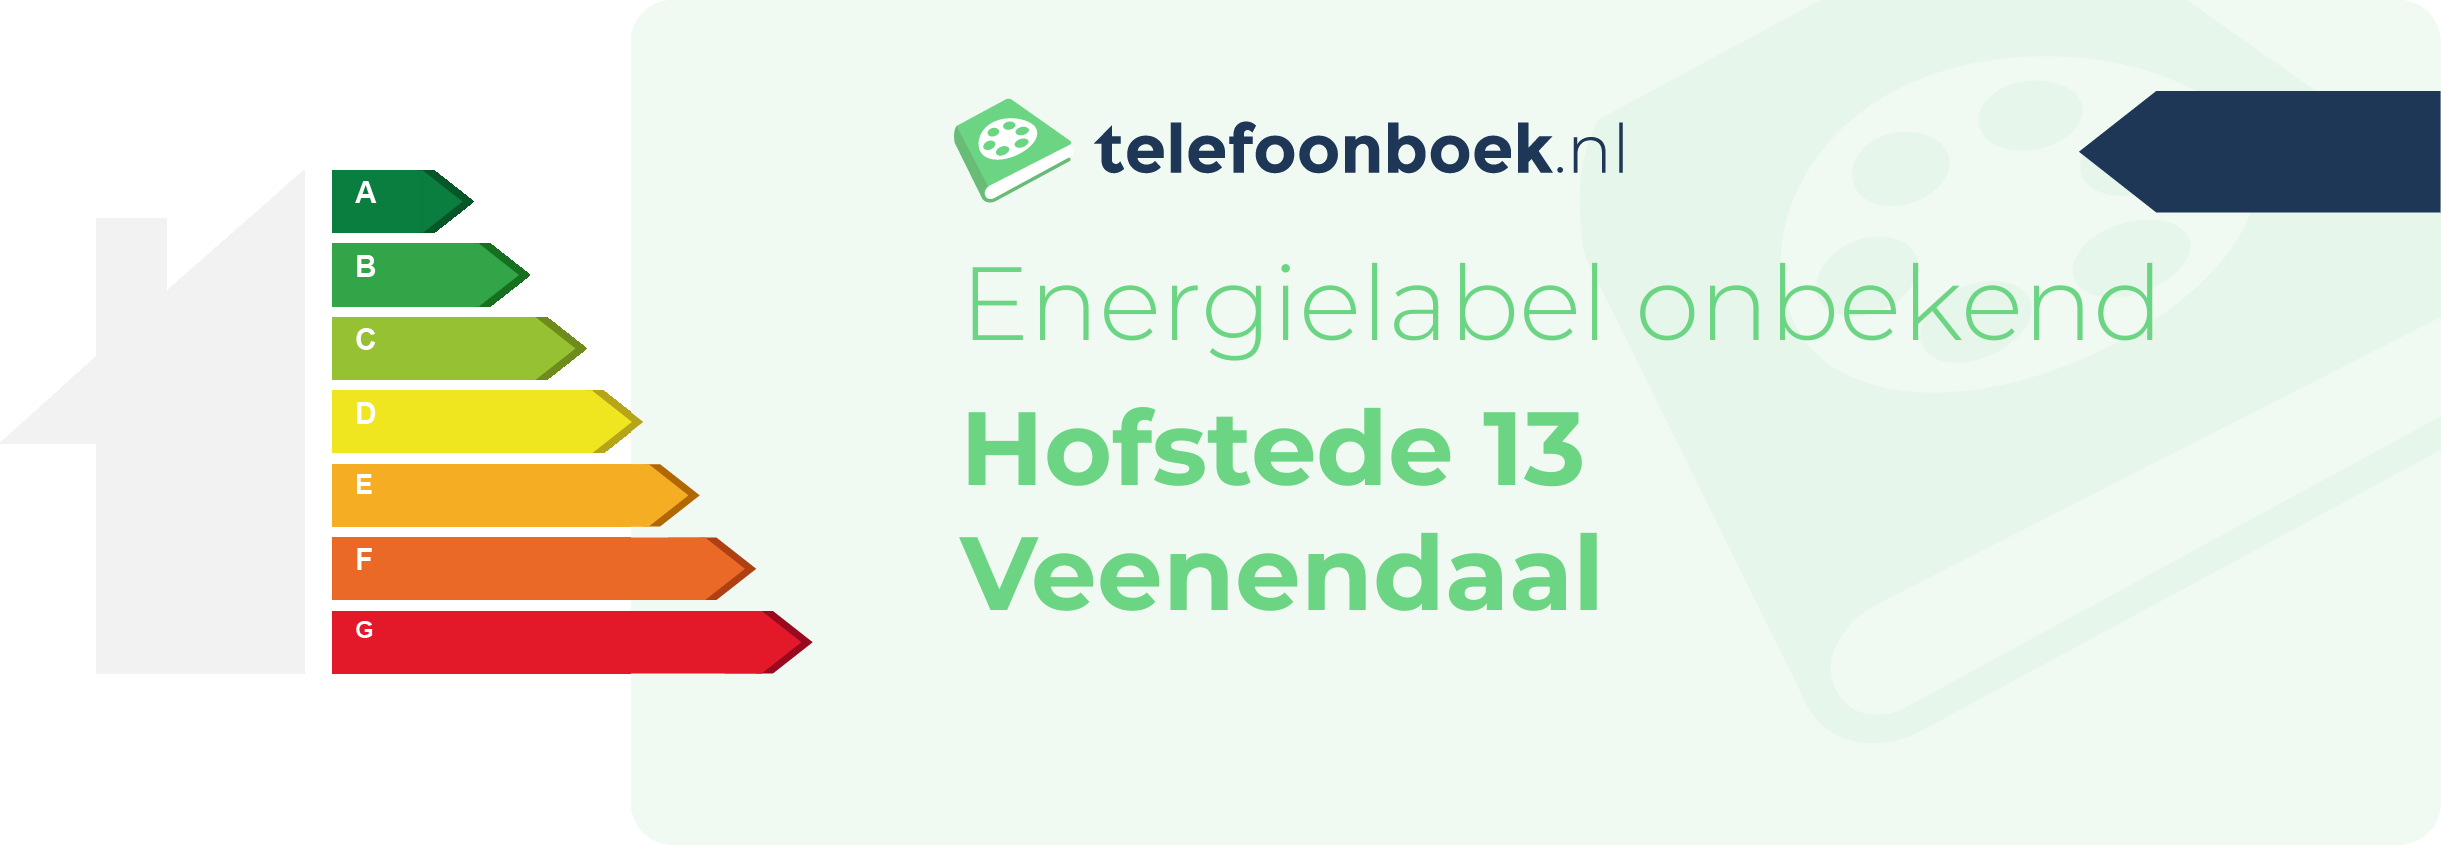 Energielabel Hofstede 13 Veenendaal